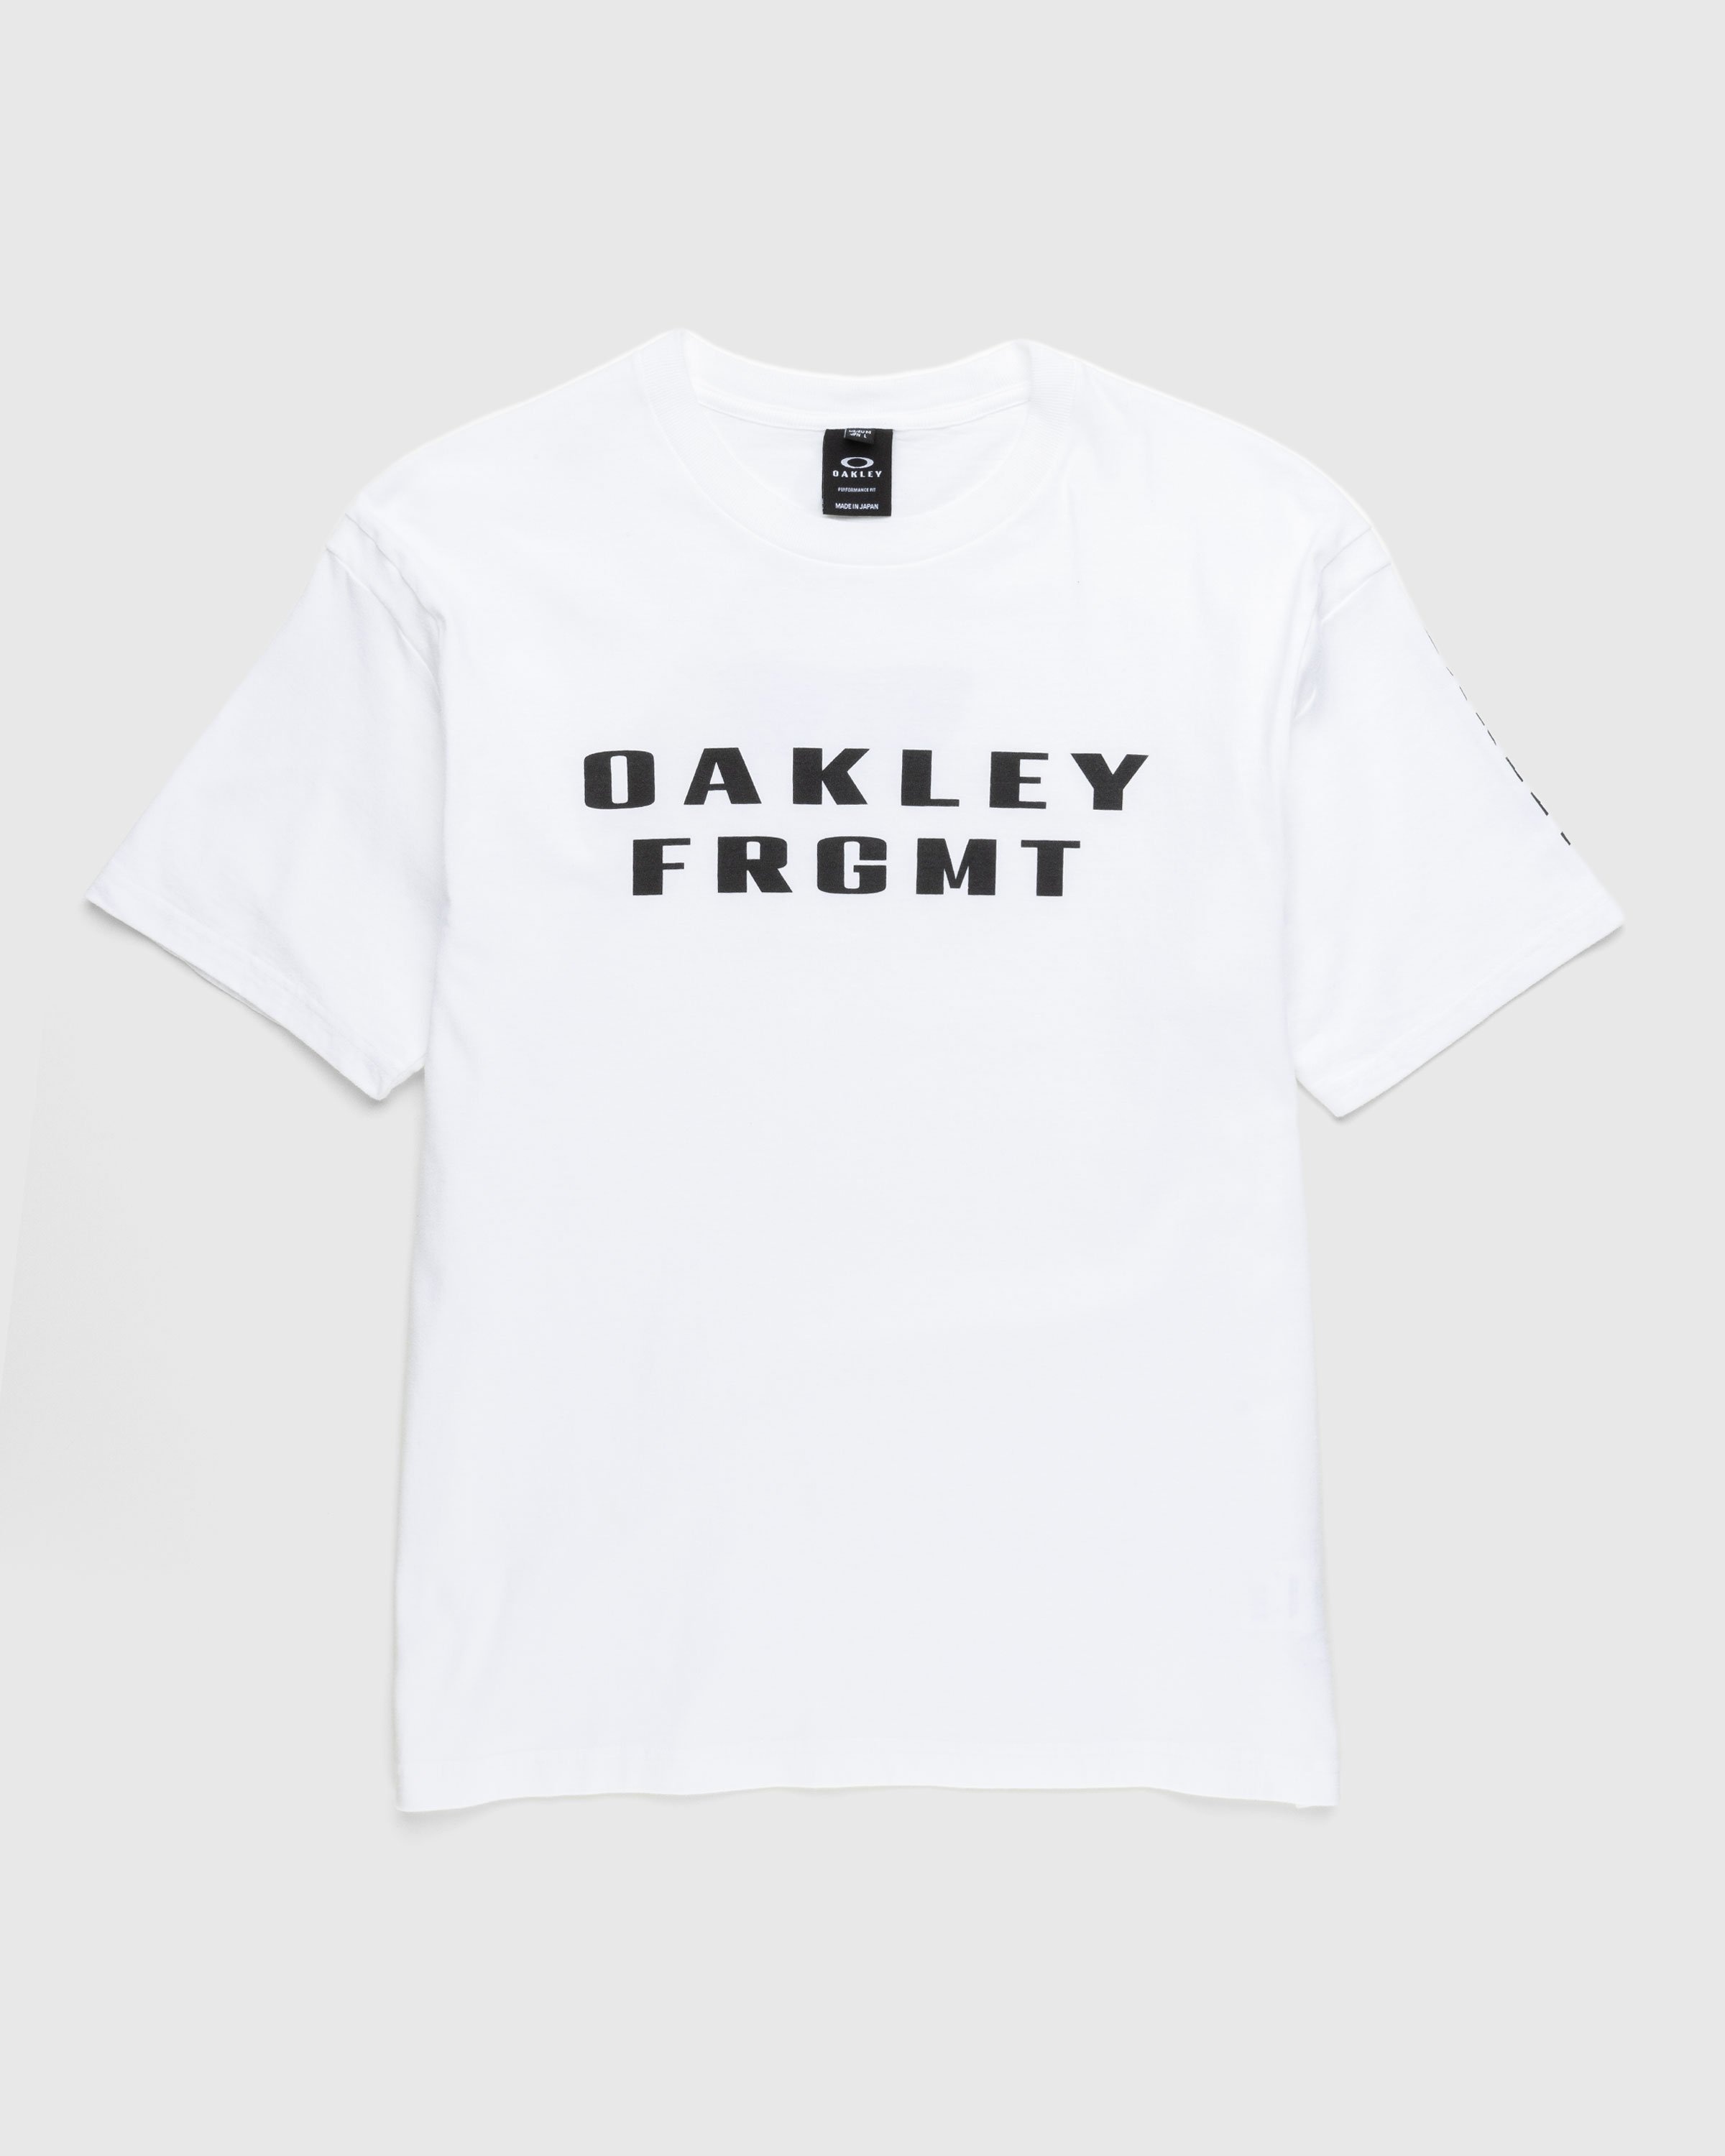 Oakley x Fragment – T-Shirt White | Highsnobiety Shop